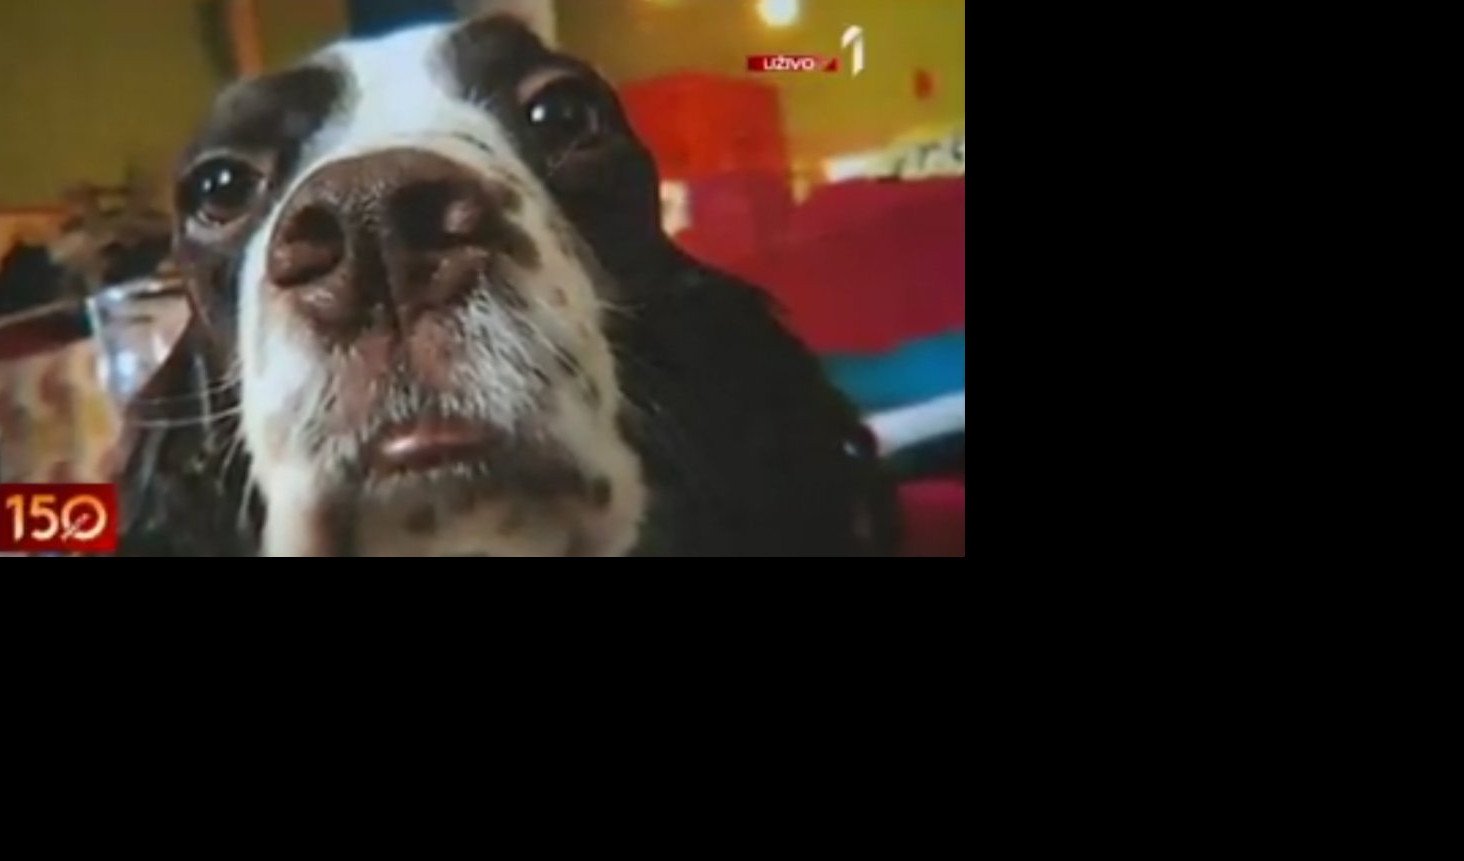 (VIDEO) NESTALA JE ĐINA! Vlasnica ostavila psa u pansionu i sad ga nema! NAGRADA ONOM KO JE NAĐE 1.000 EVRA!